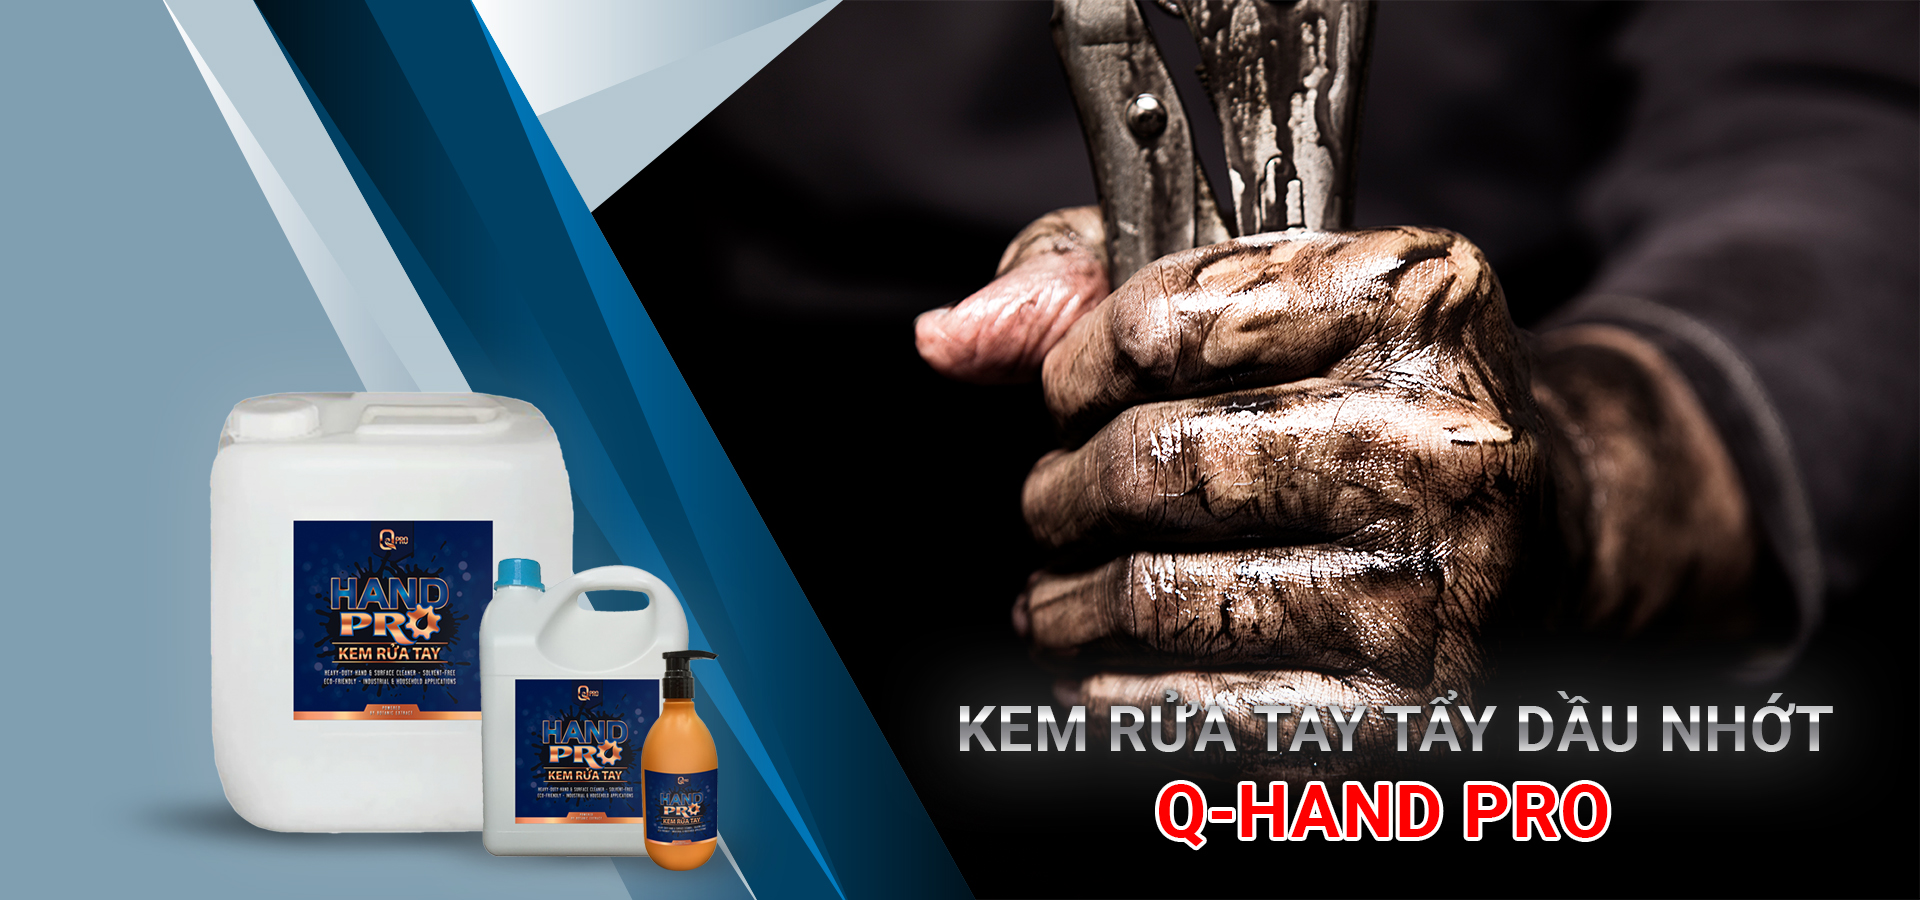 Kem rửa tay tẩy dầu nhớt Q-HAND PRO